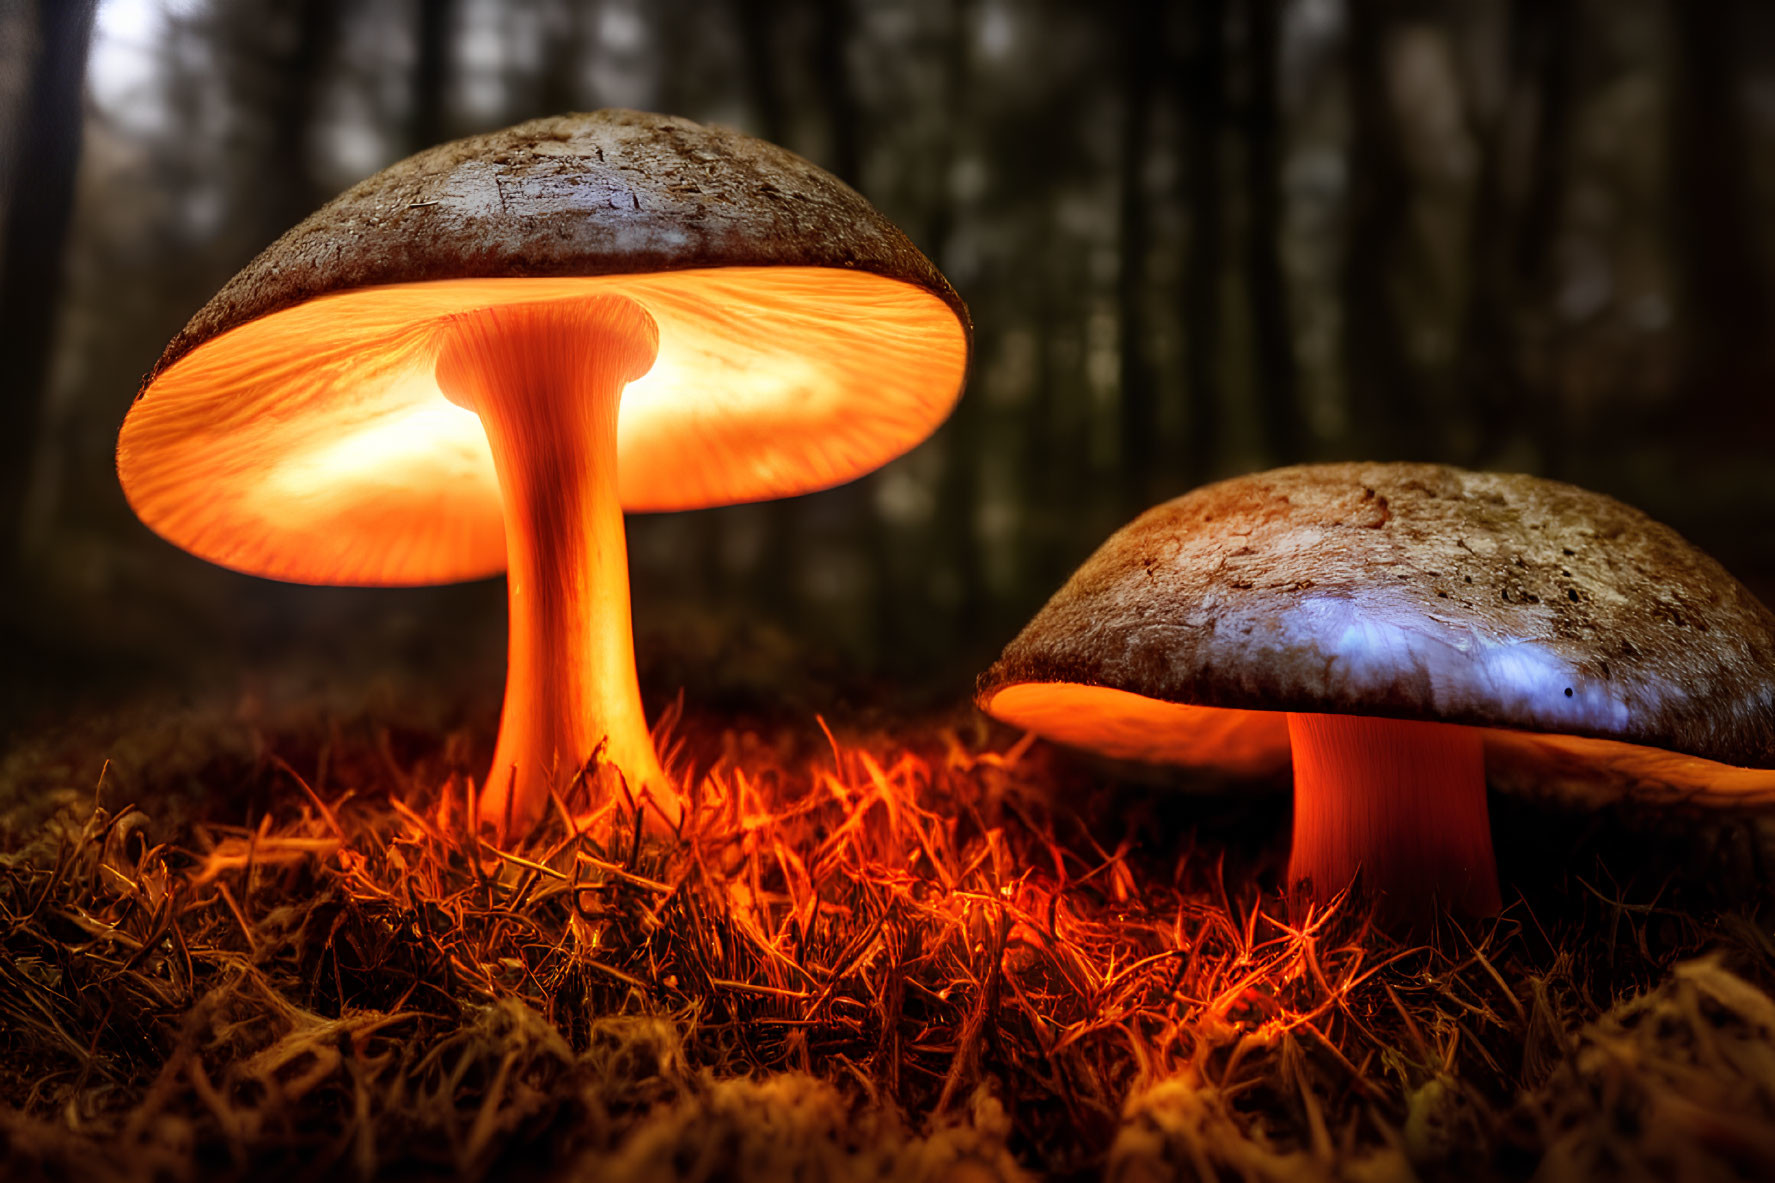 Luminous orange mushrooms in dark forest setting